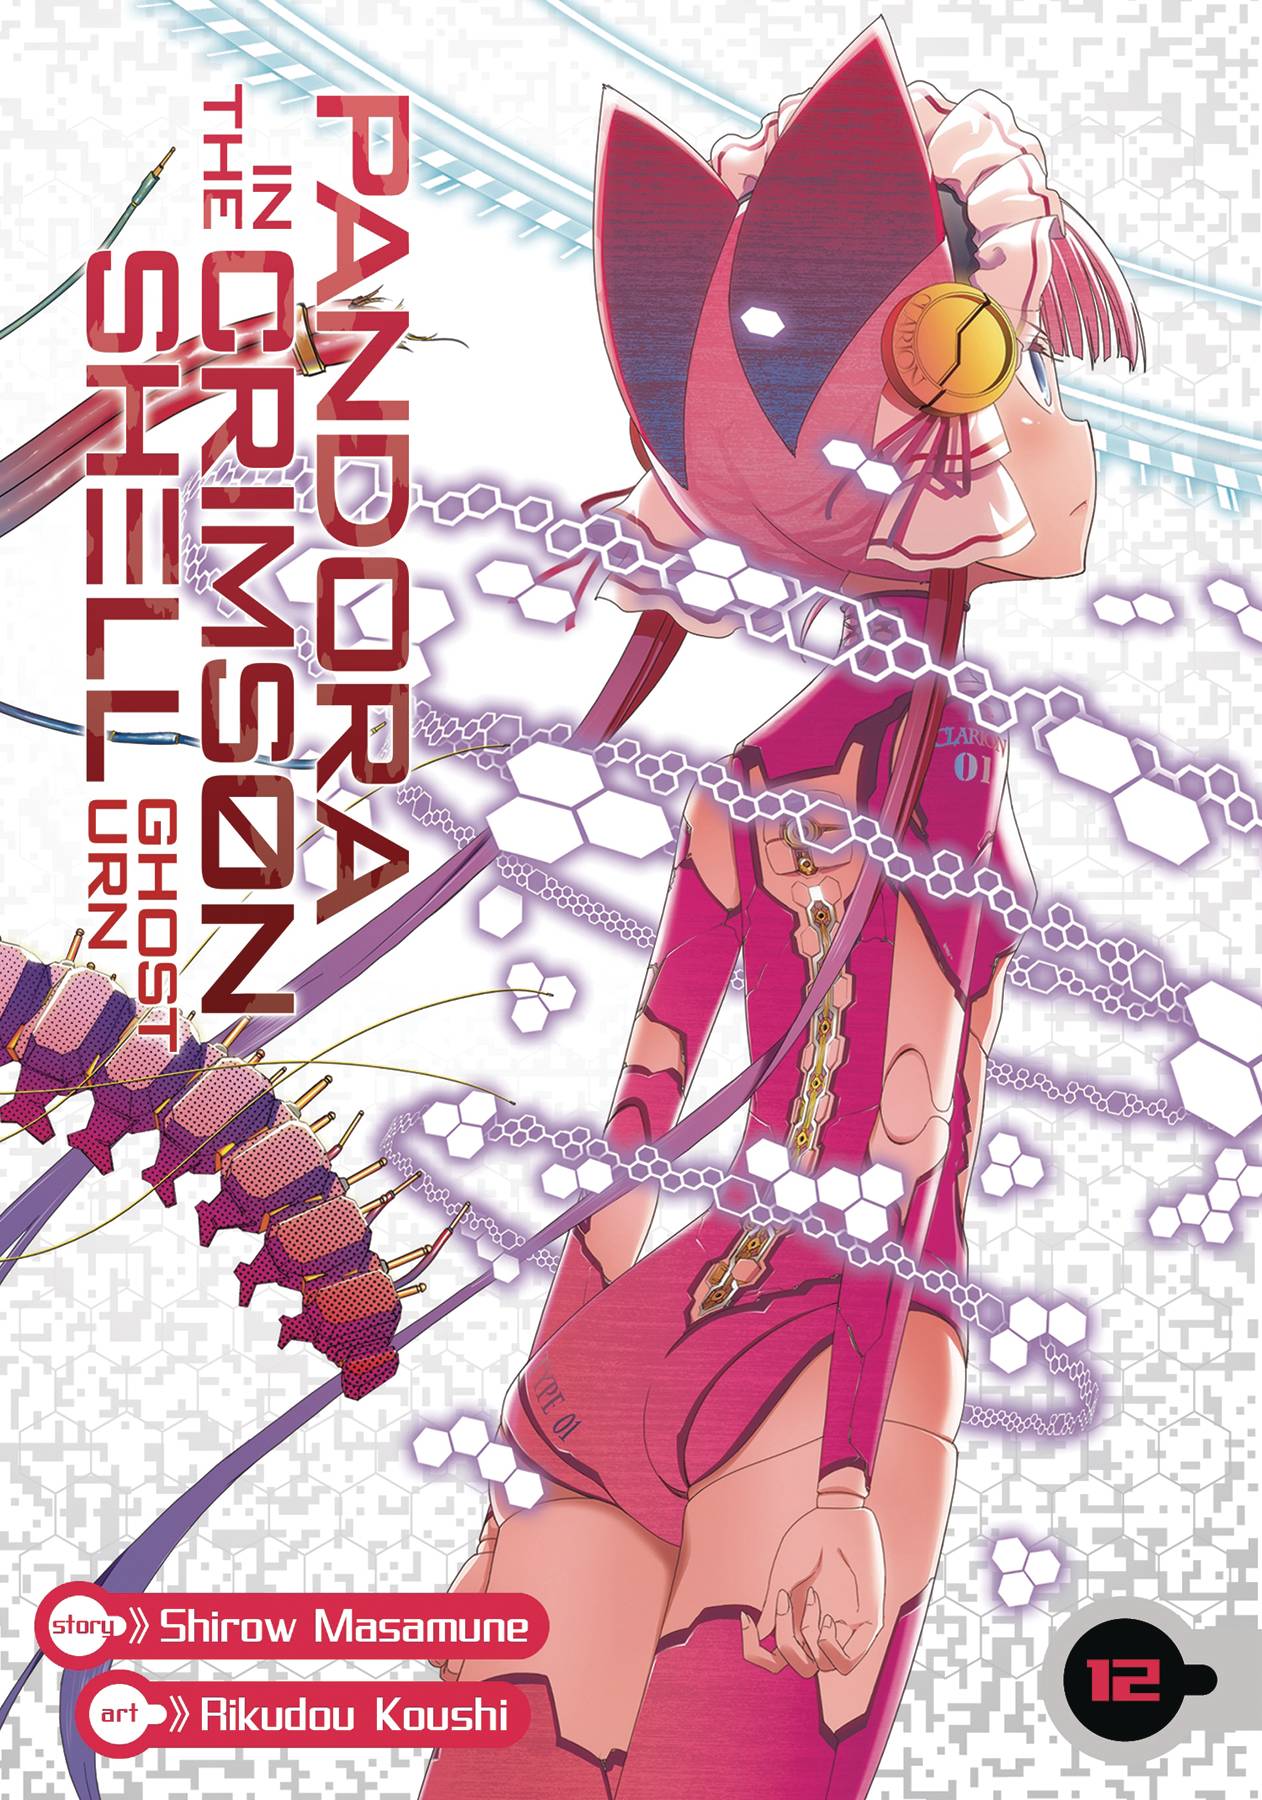 Pandora of the Crimson Shell: Ghost Urn Manga Volume 12 (Mature)